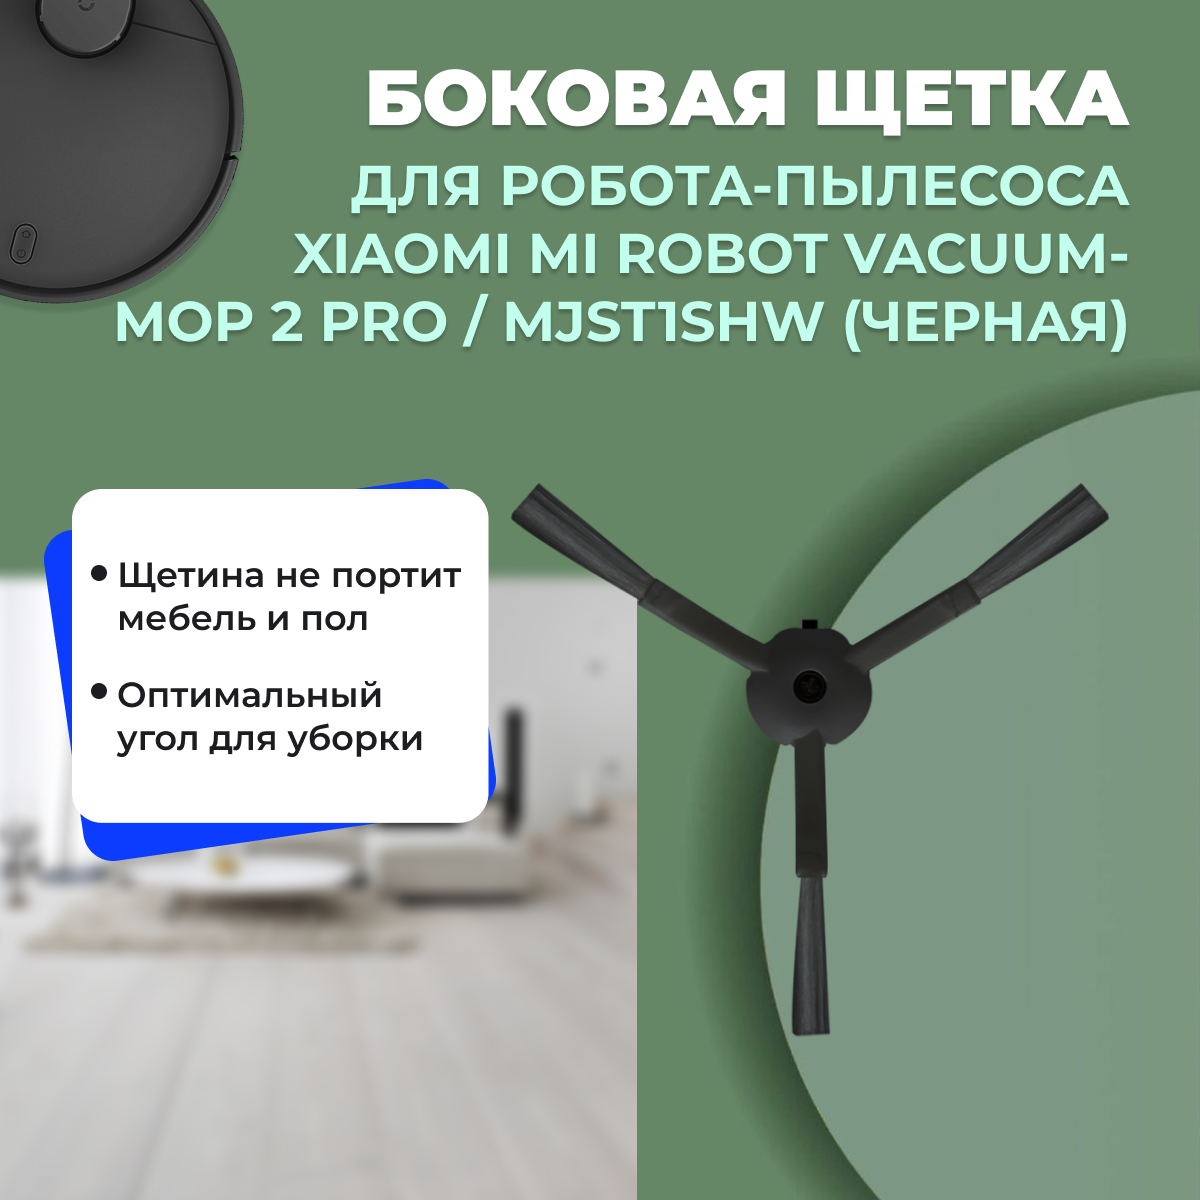 Боковая щетка для робота-пылесоса Xiaomi Mi Robot Vacuum-Mop 2 Pro, черная (MJST1SHW) 558185